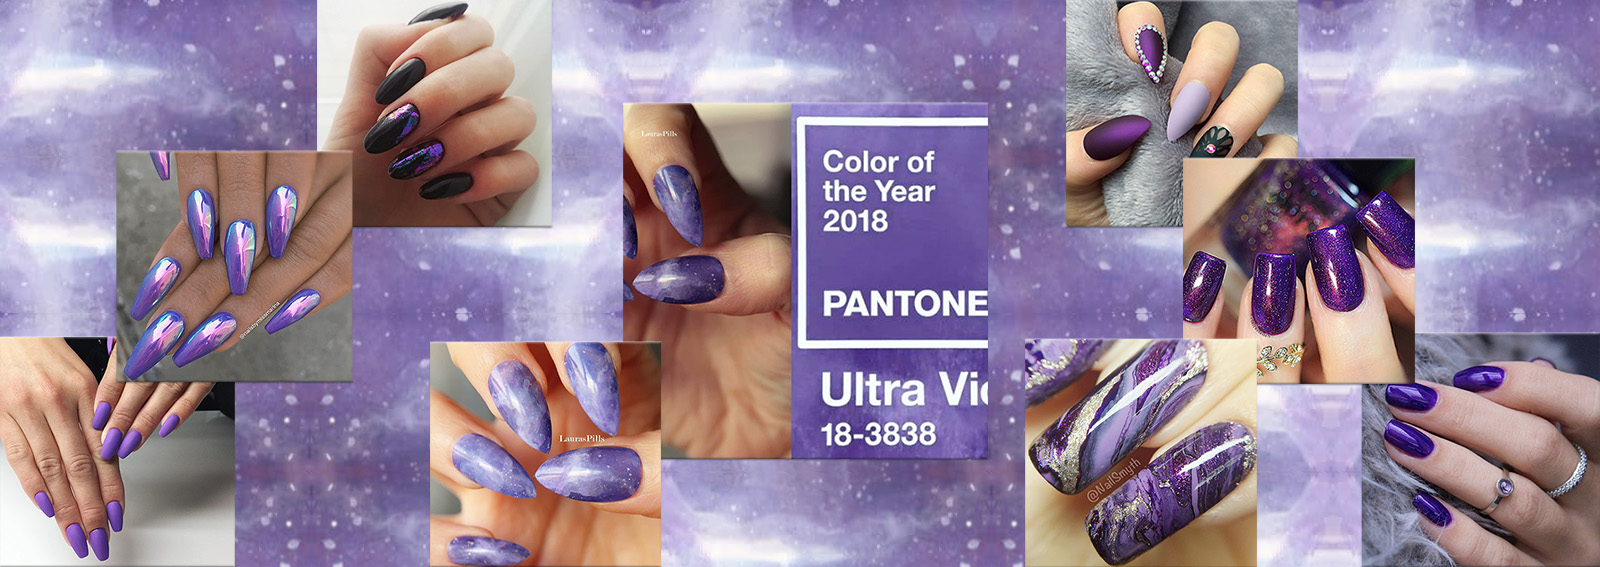 Nail art 2018 le unghie Ultra Violet nel colore dell'anno collage_desktop